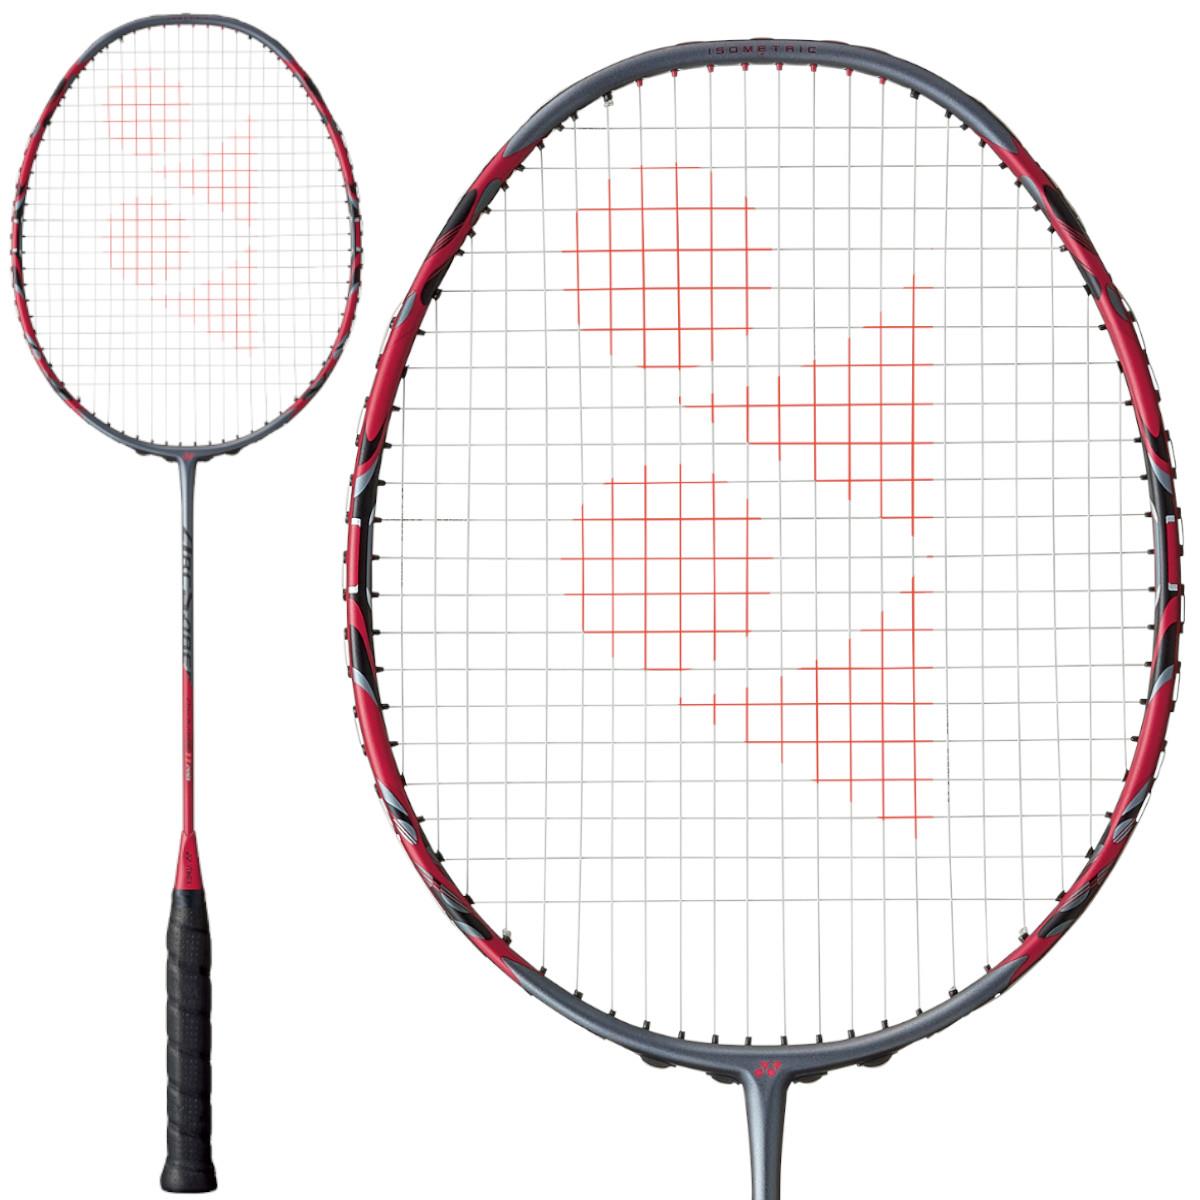 Yonex Arcsaber 11 Pro 3U Badminton Racket